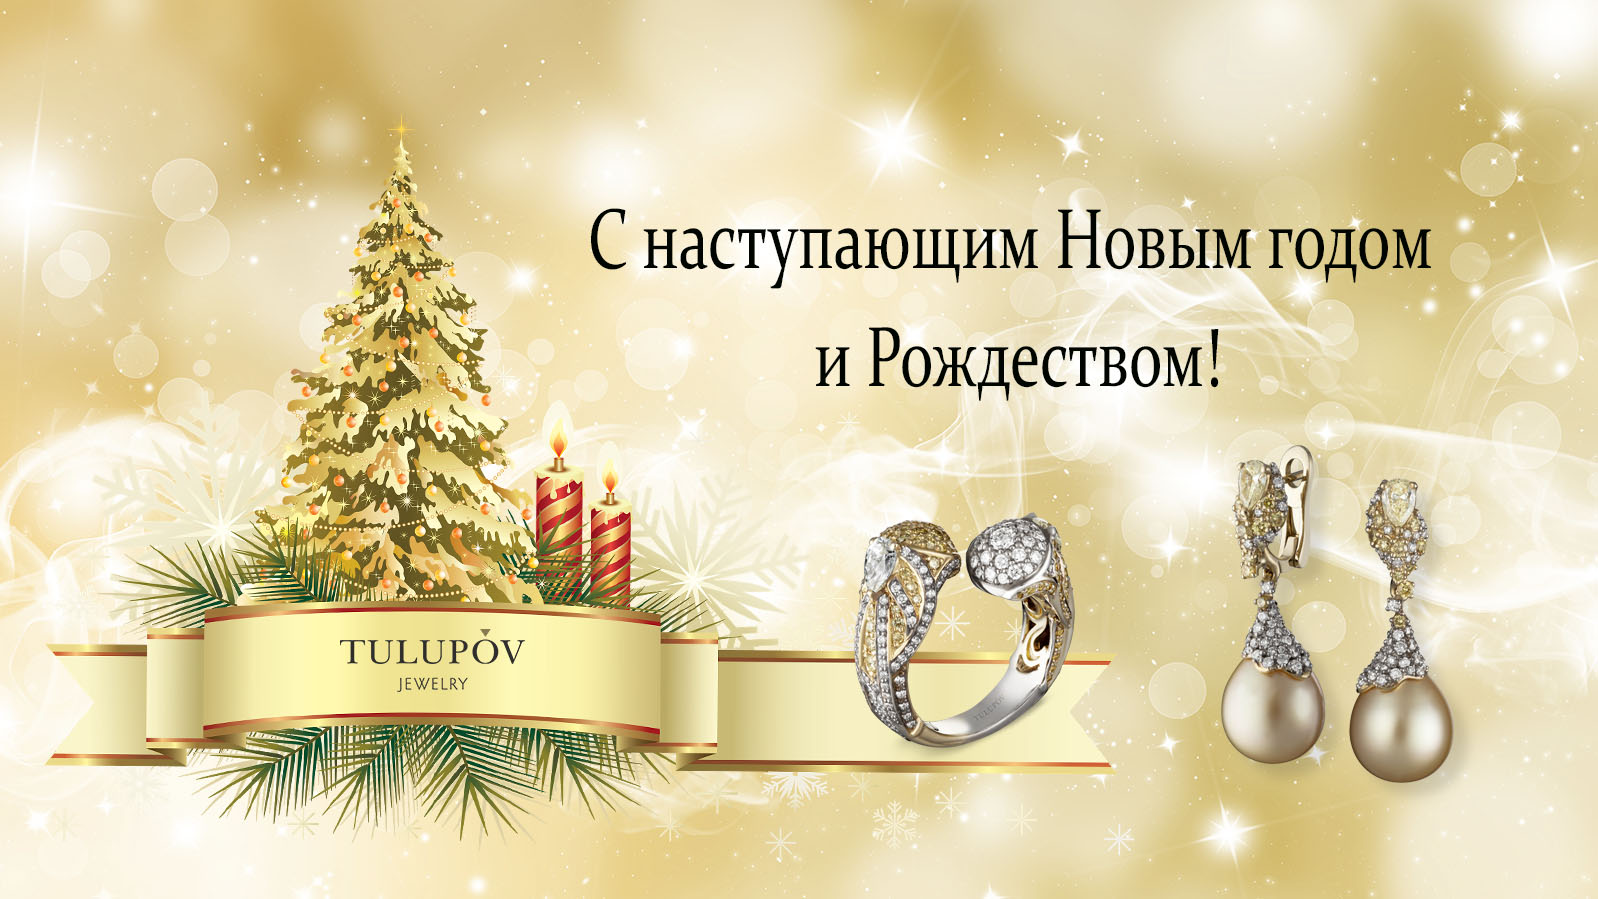 Дорогие друзья! Ювелирный Дом TULUPOV Jewelry поздравляет Вас с Наступающим Новым 2023 Годом и Рождеством!